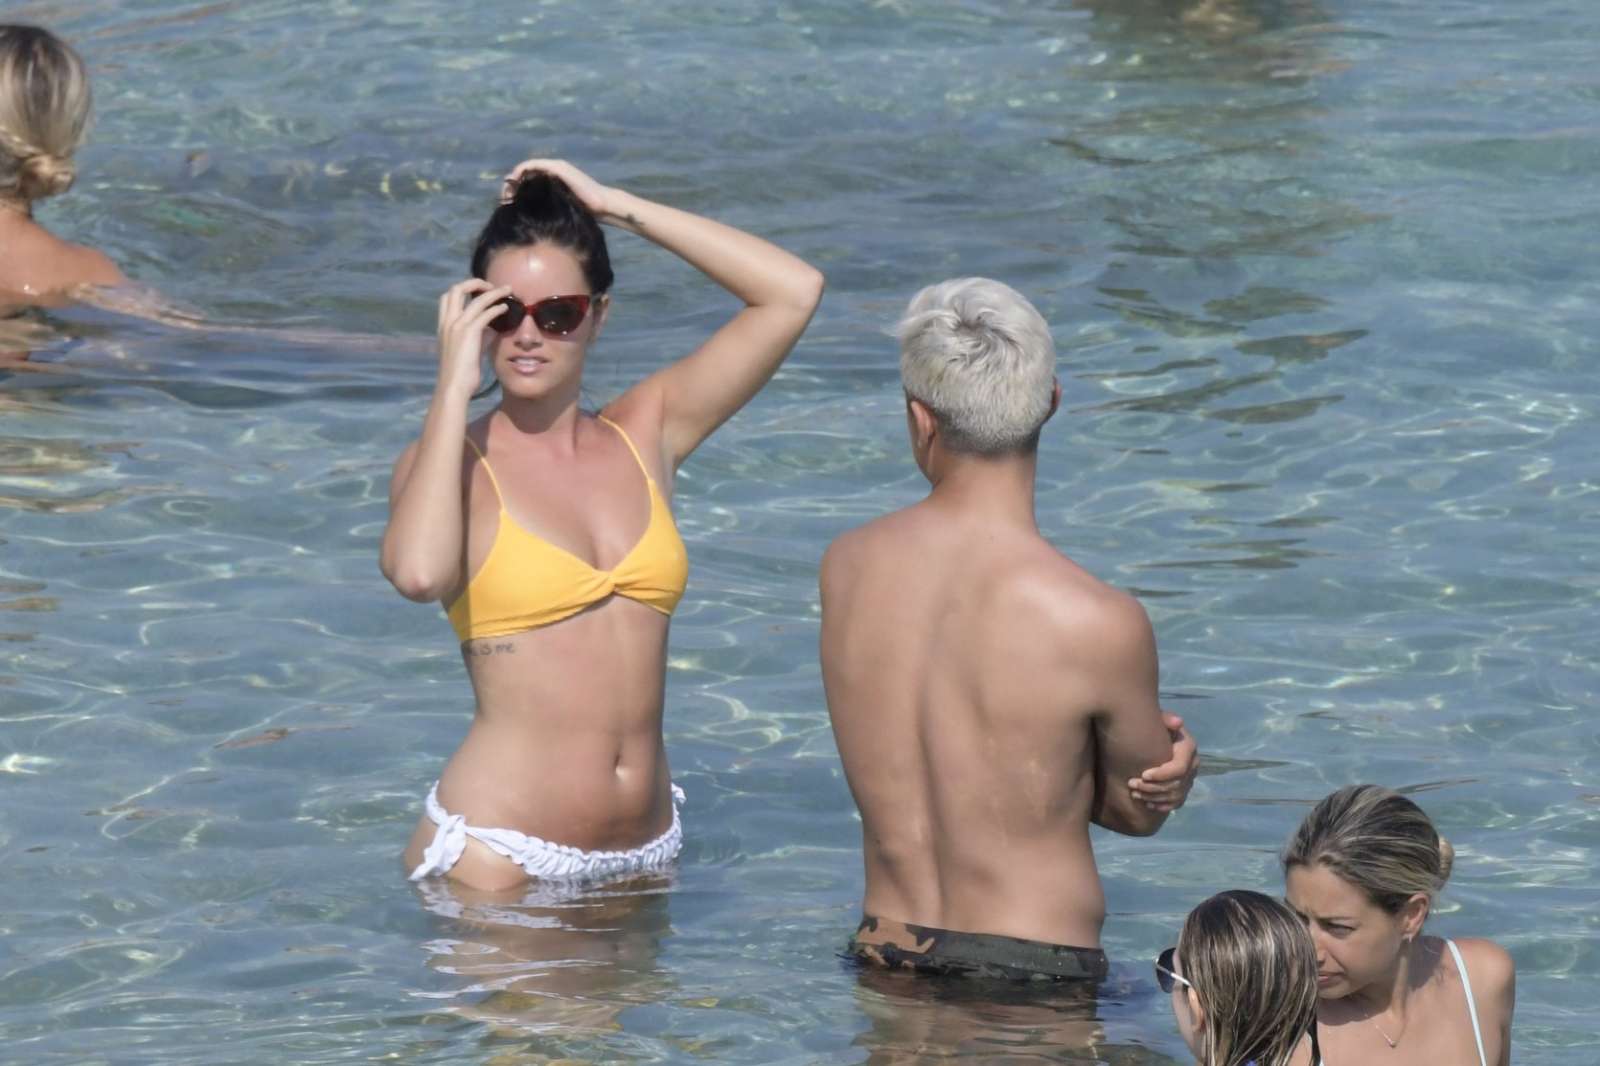 Oriana Sabatini in Bikini at the beach in Mykonos July 28, 2018 86